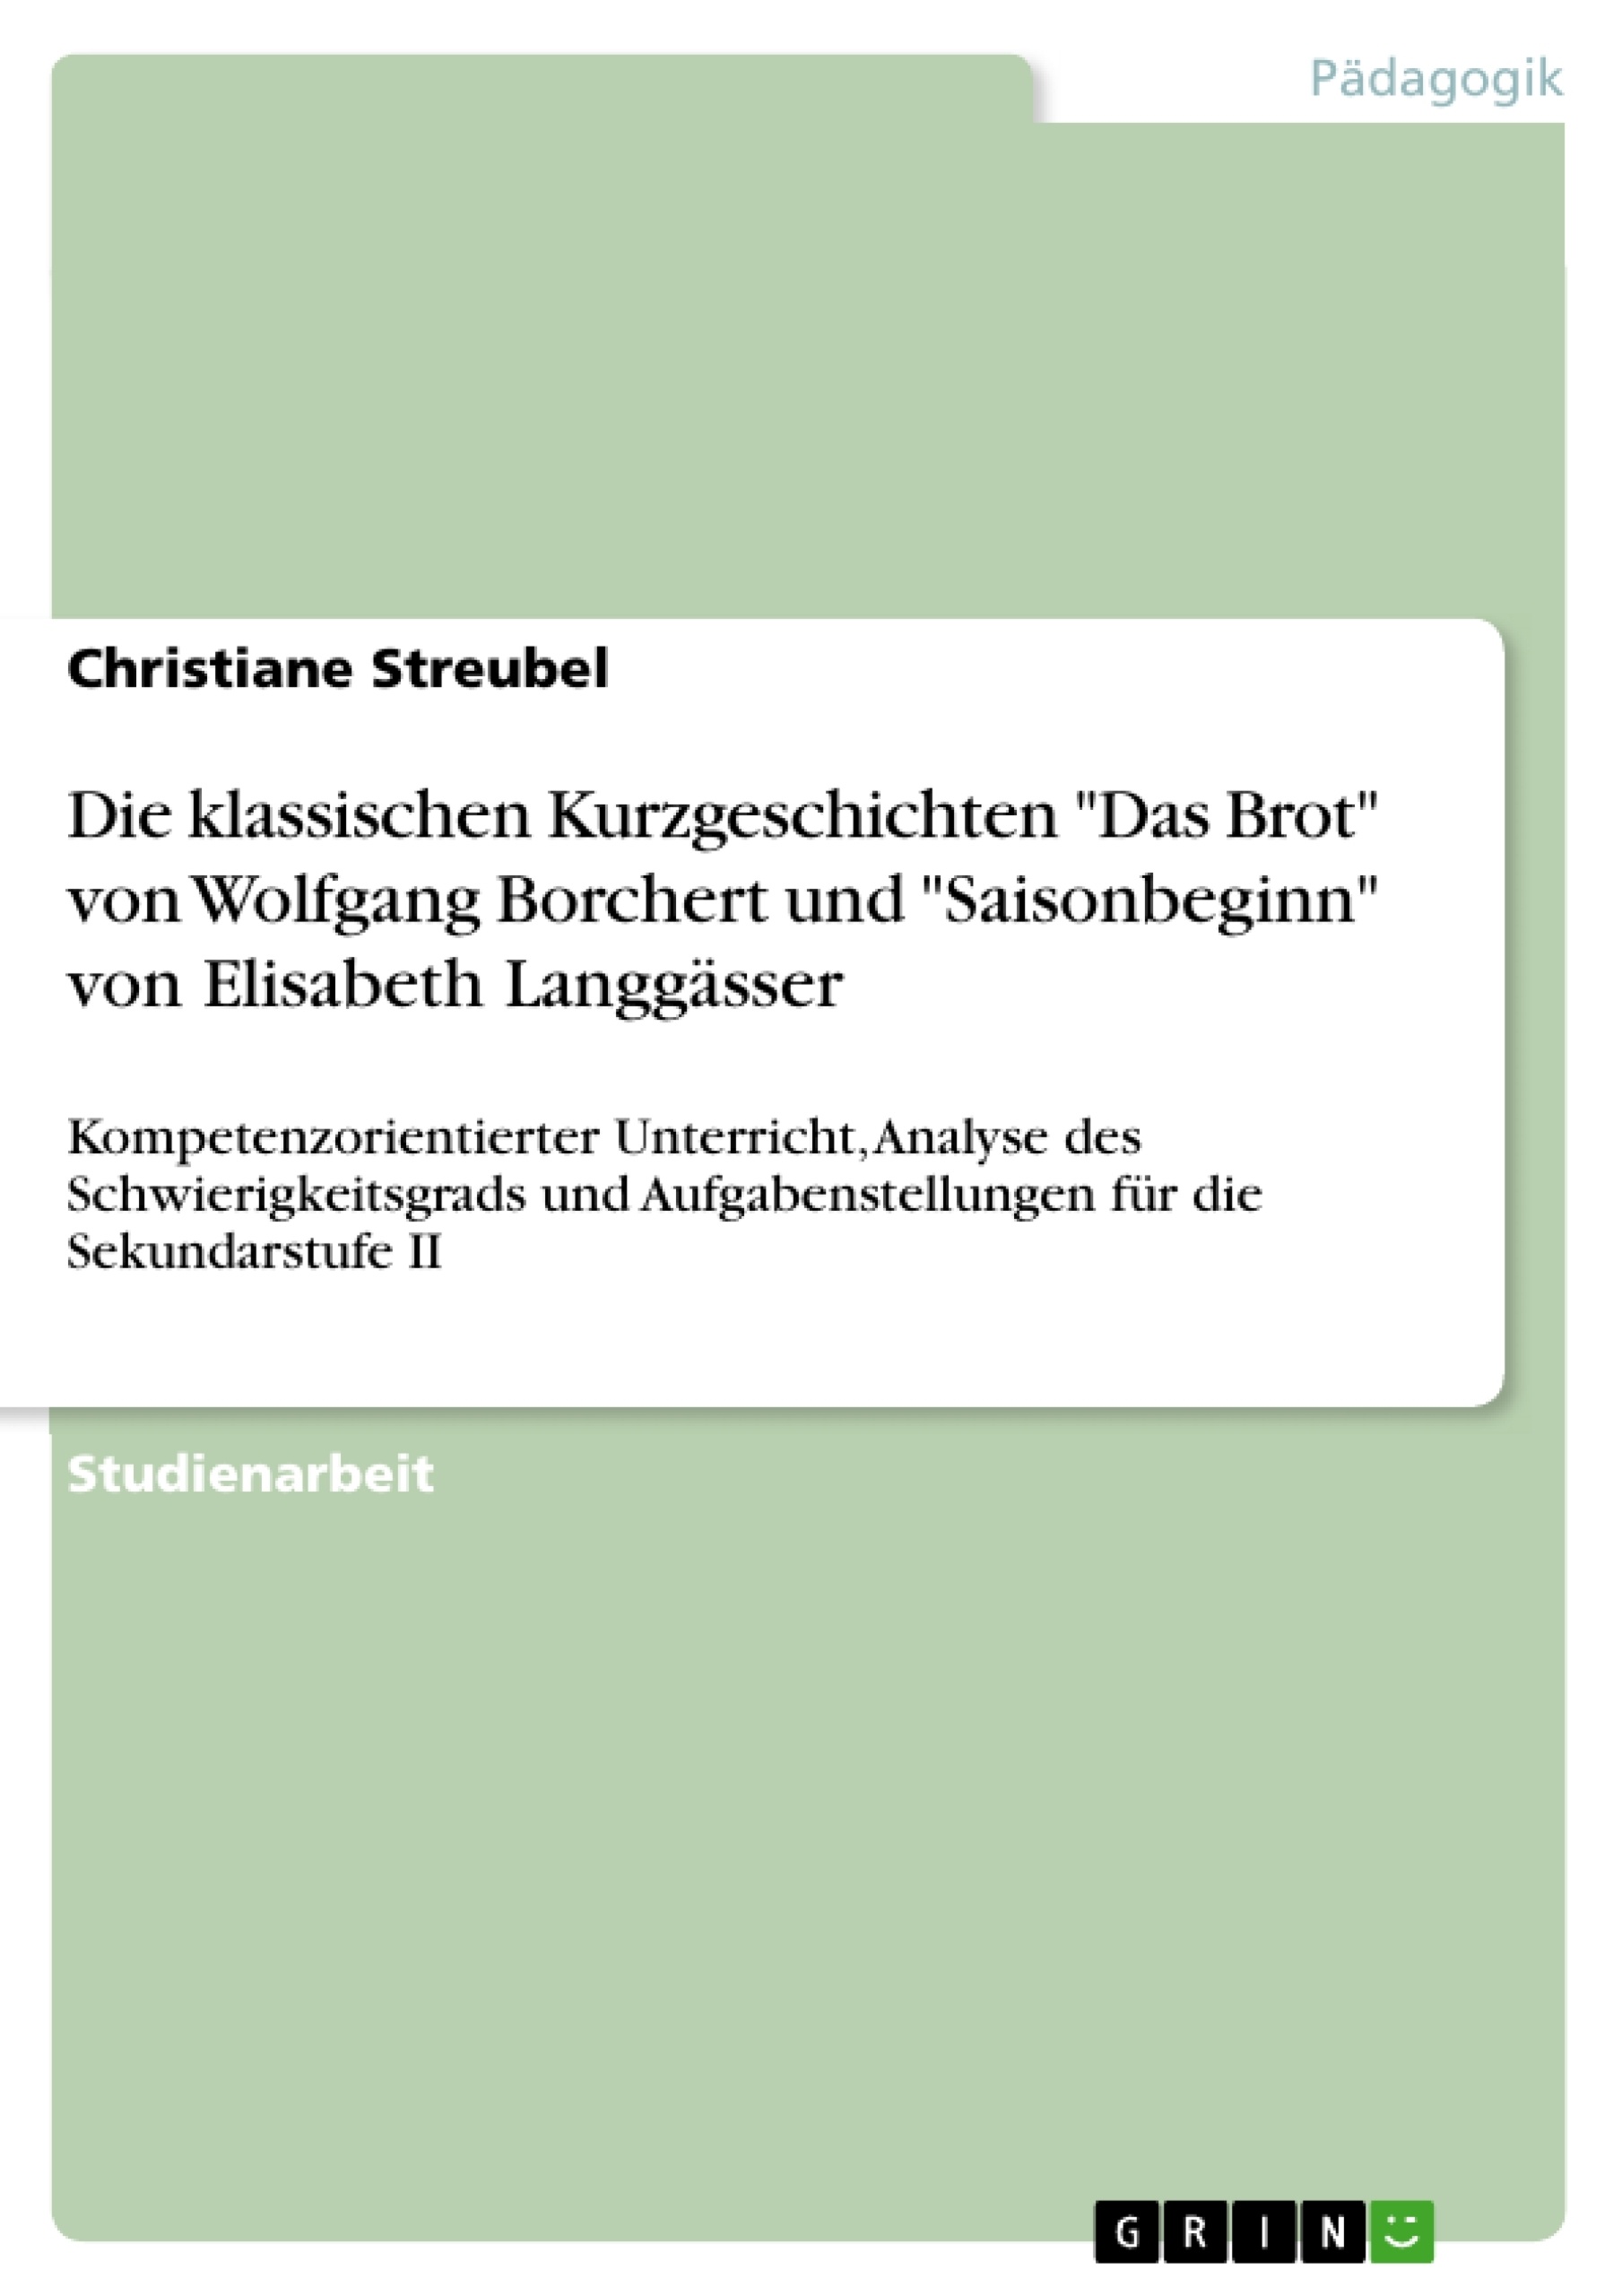 Titel: Die klassischen Kurzgeschichten "Das Brot" von Wolfgang Borchert und "Saisonbeginn" von Elisabeth Langgässer